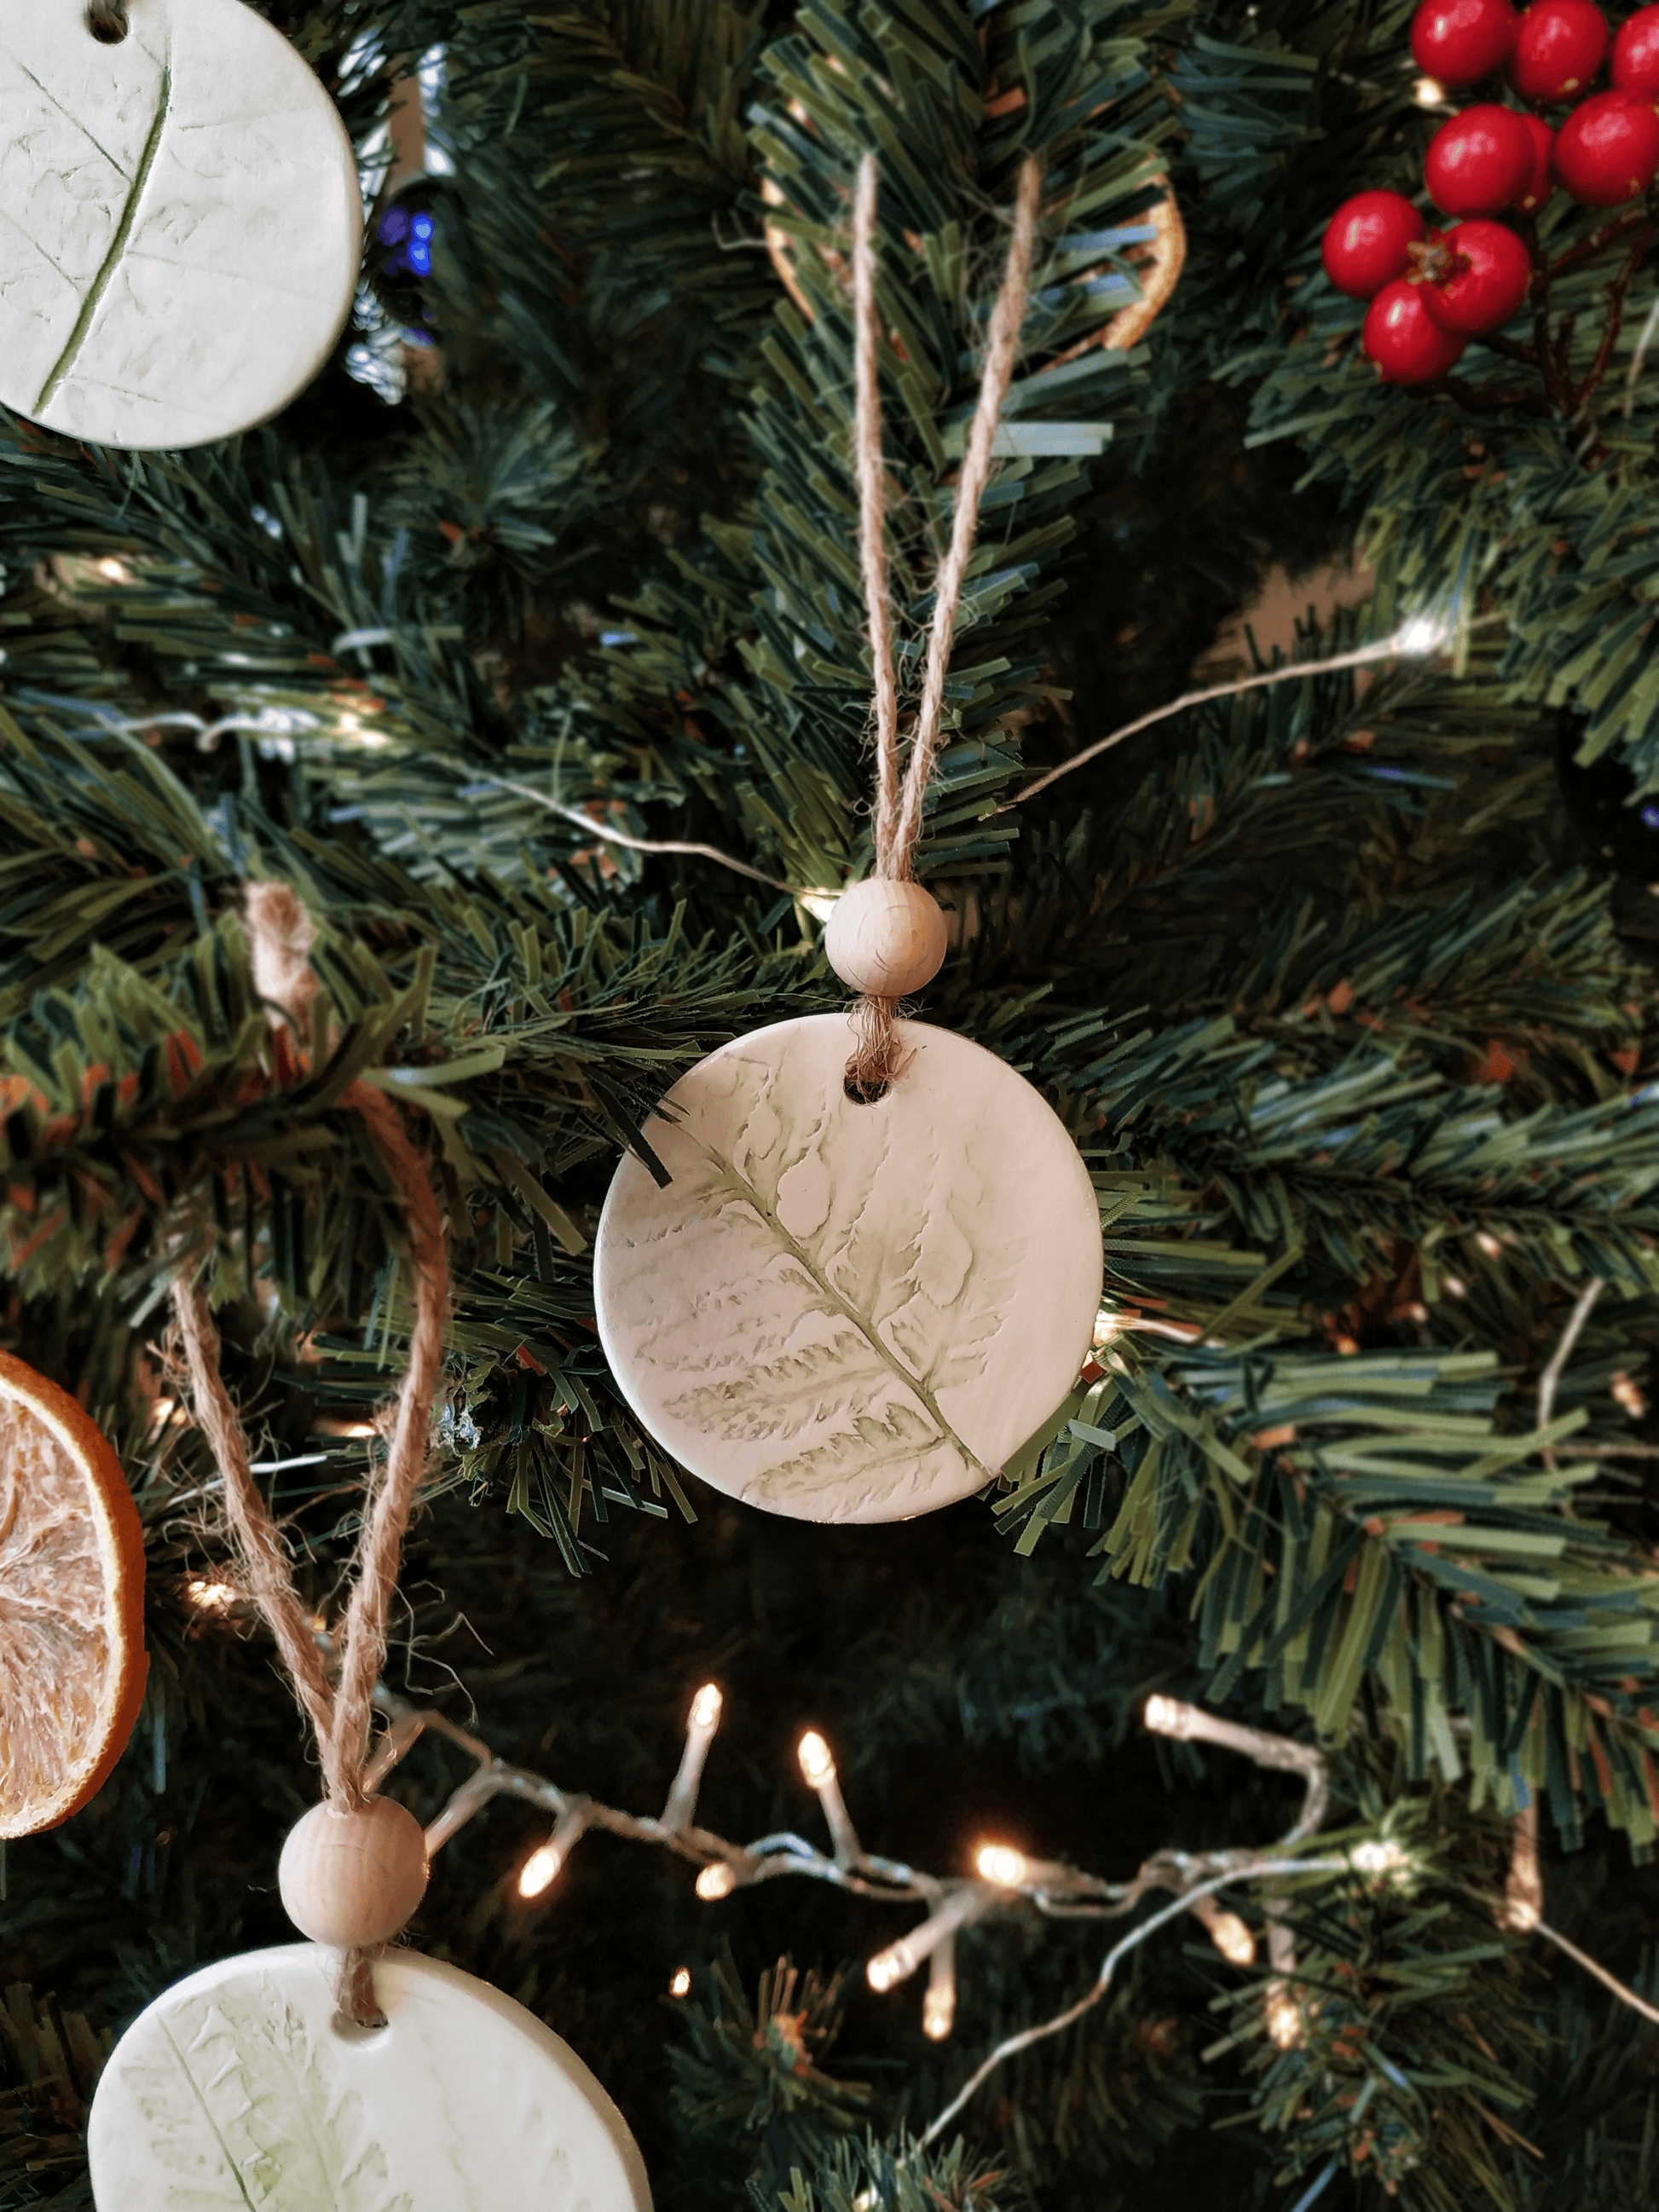 Eglutės dekoracijų komplektas "Papartis" - kalėdinės dekoracijos